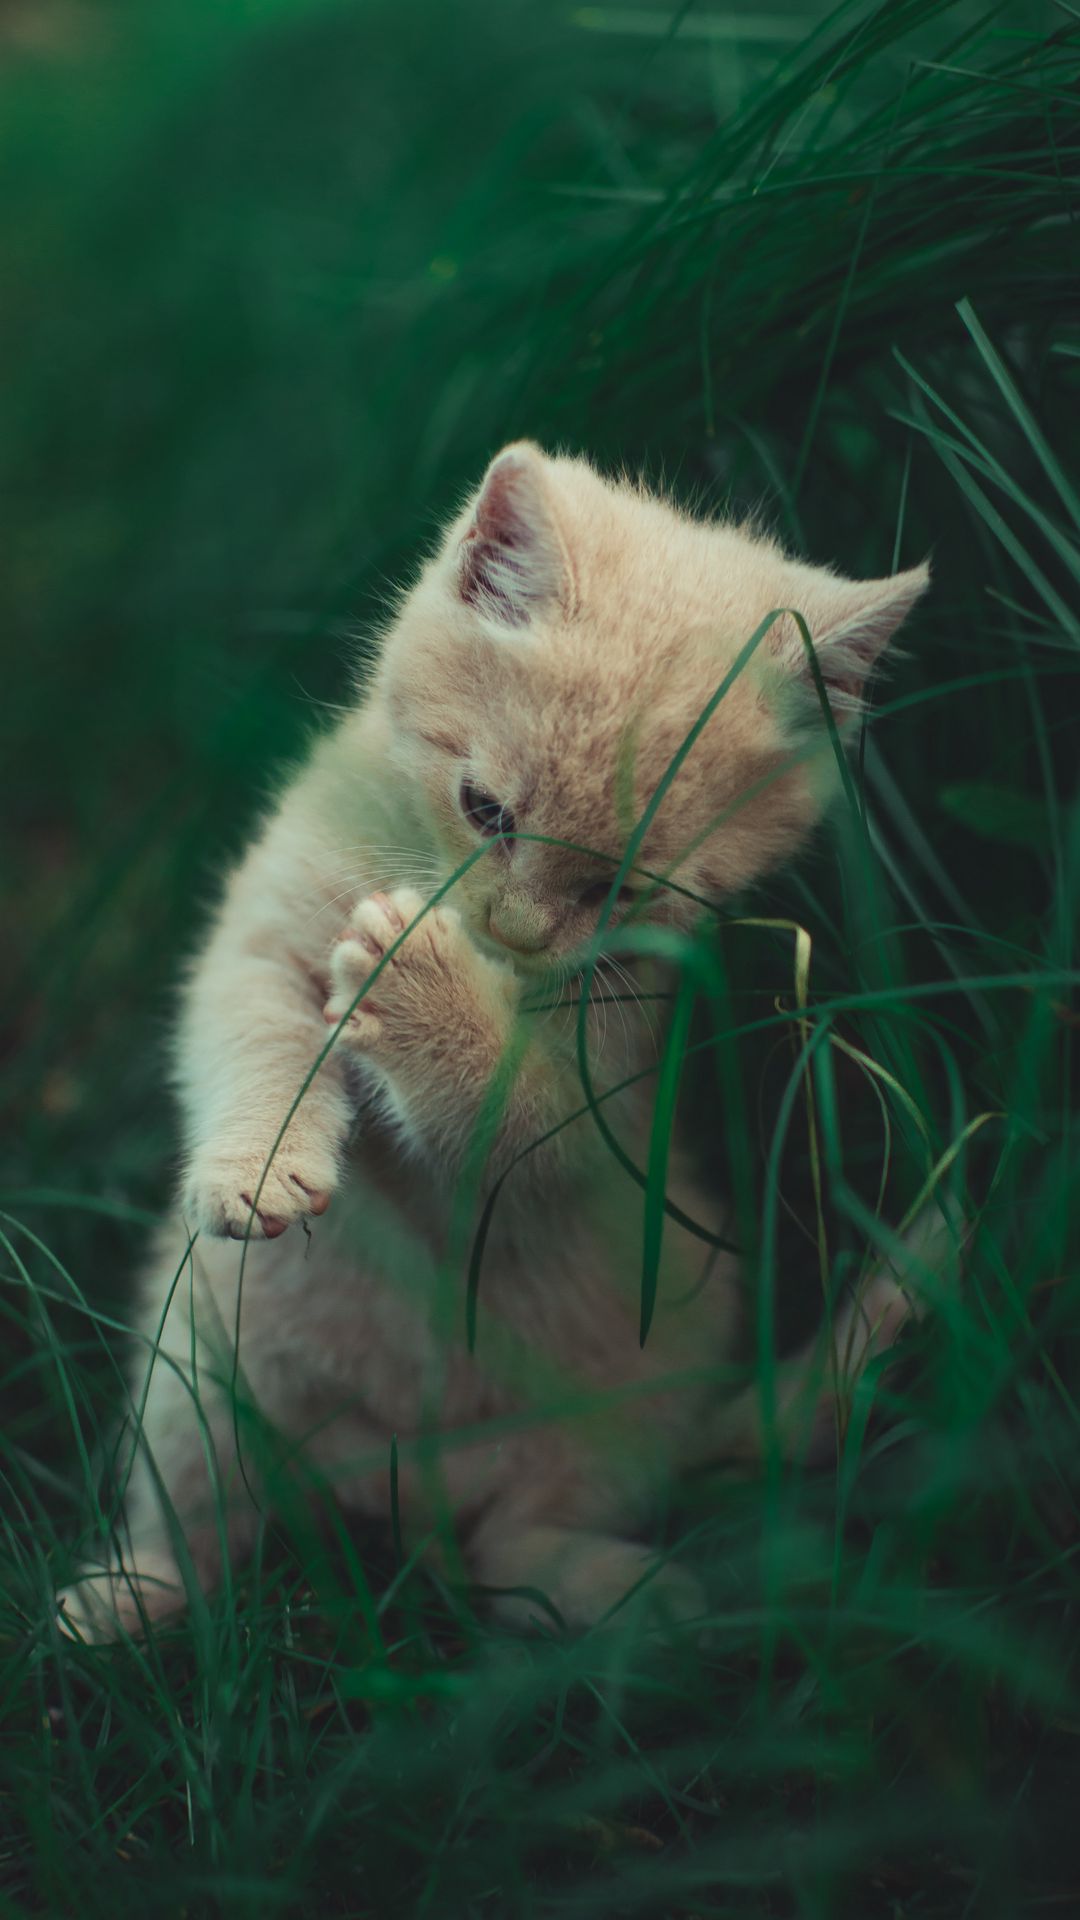 Mèo, cỏ, đáng yêu: Những khoảnh khắc ngọt ngào với những chú mèo đáng yêu luôn tạo cho chúng ta một cảm giác yên bình và đầy niềm tin tưởng vào cuộc sống này. Hãy thưởng thức những bức ảnh đáng yêu này cùng với những chiếc lá cỏ màu xanh ngát để đem lại cho bạn một trải nghiệm tuyệt vời trong thế giới của những tình cảm và sự vui vẻ.